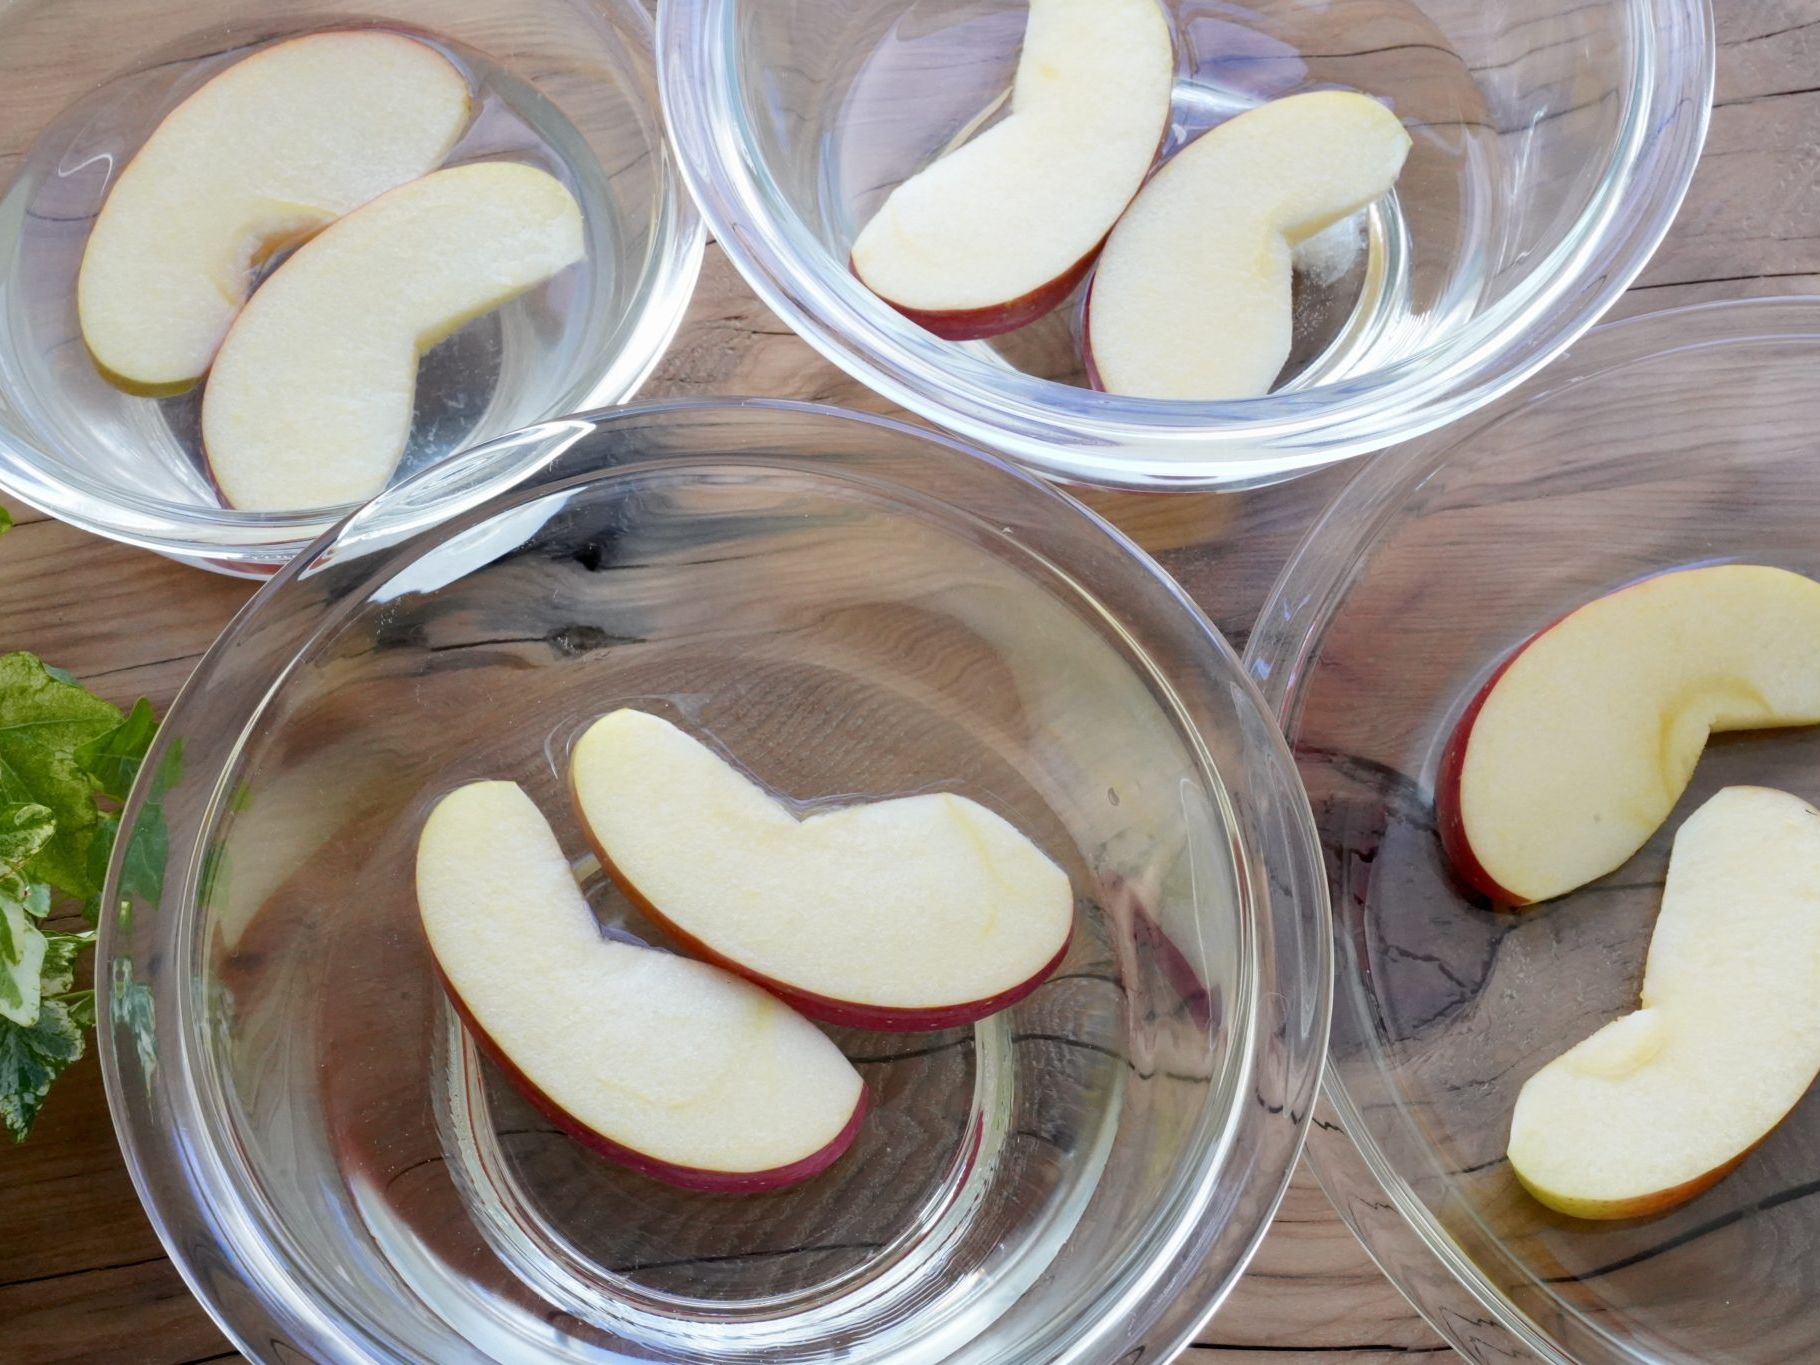 りんごの変色を防ぐ方法 塩水と砂糖水がおすすめ 時間や濃度を解説 やまでら くみこ のレシピ